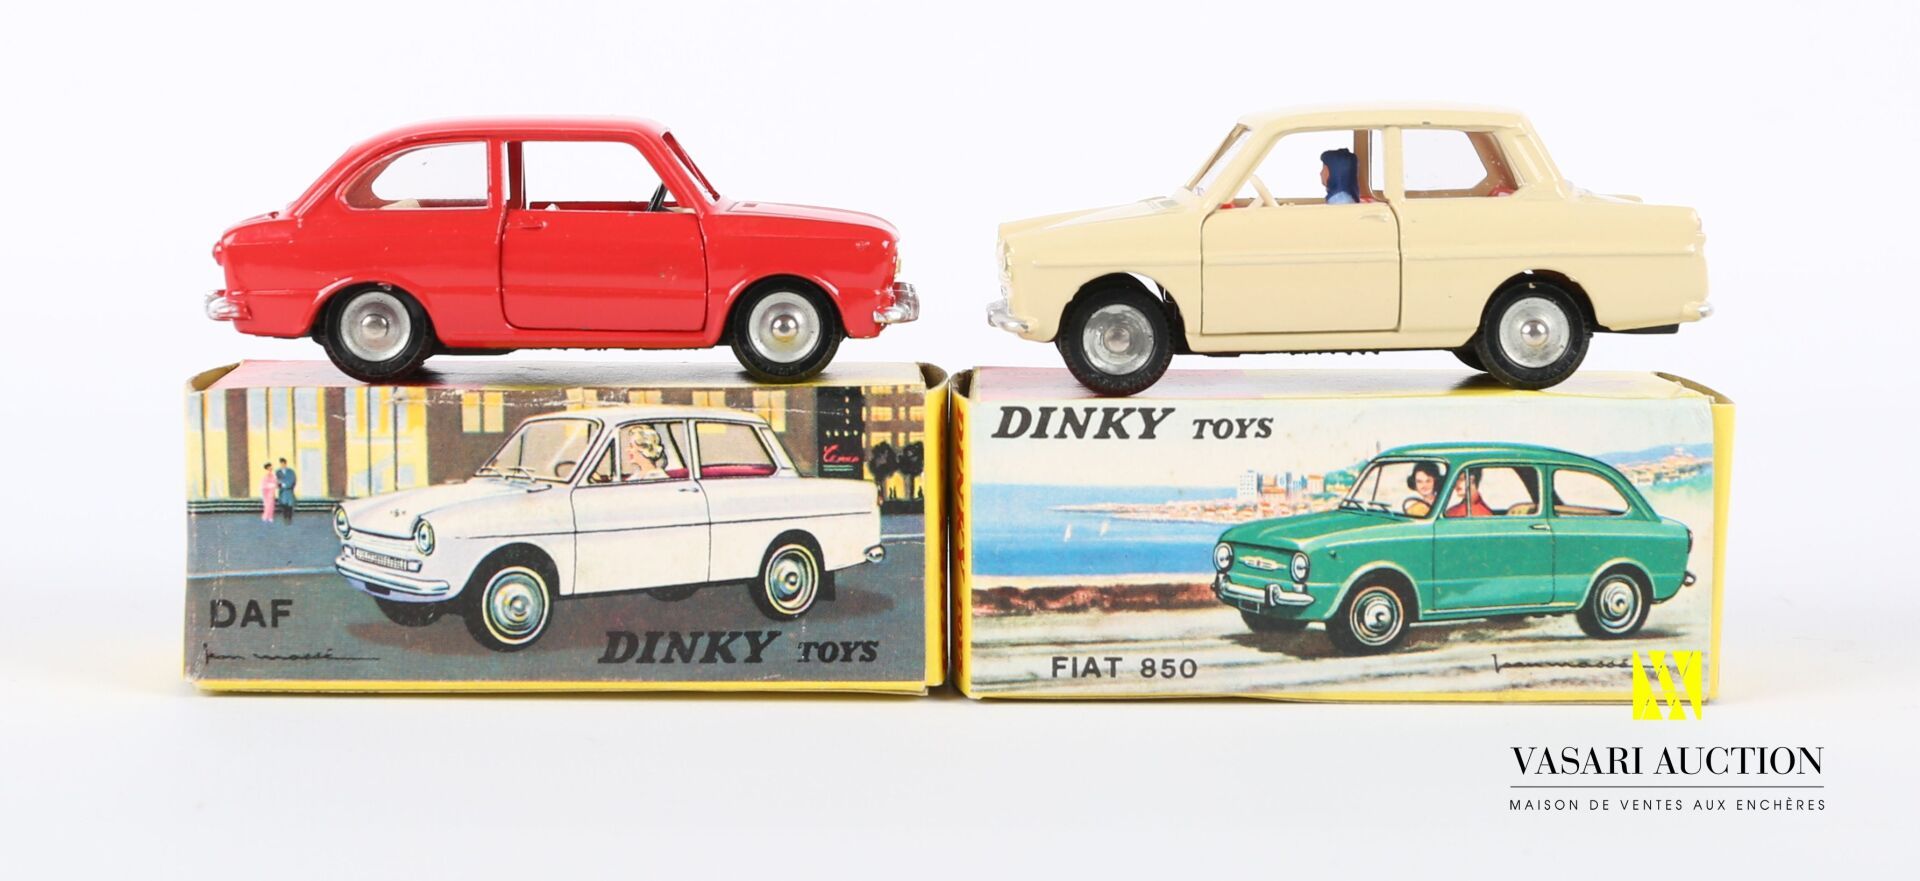 Null DINKY TOYS (DE)

Set aus zwei Fahrzeugen: DAF Ref 508 - Fiat 850 Ref 509.

&hellip;